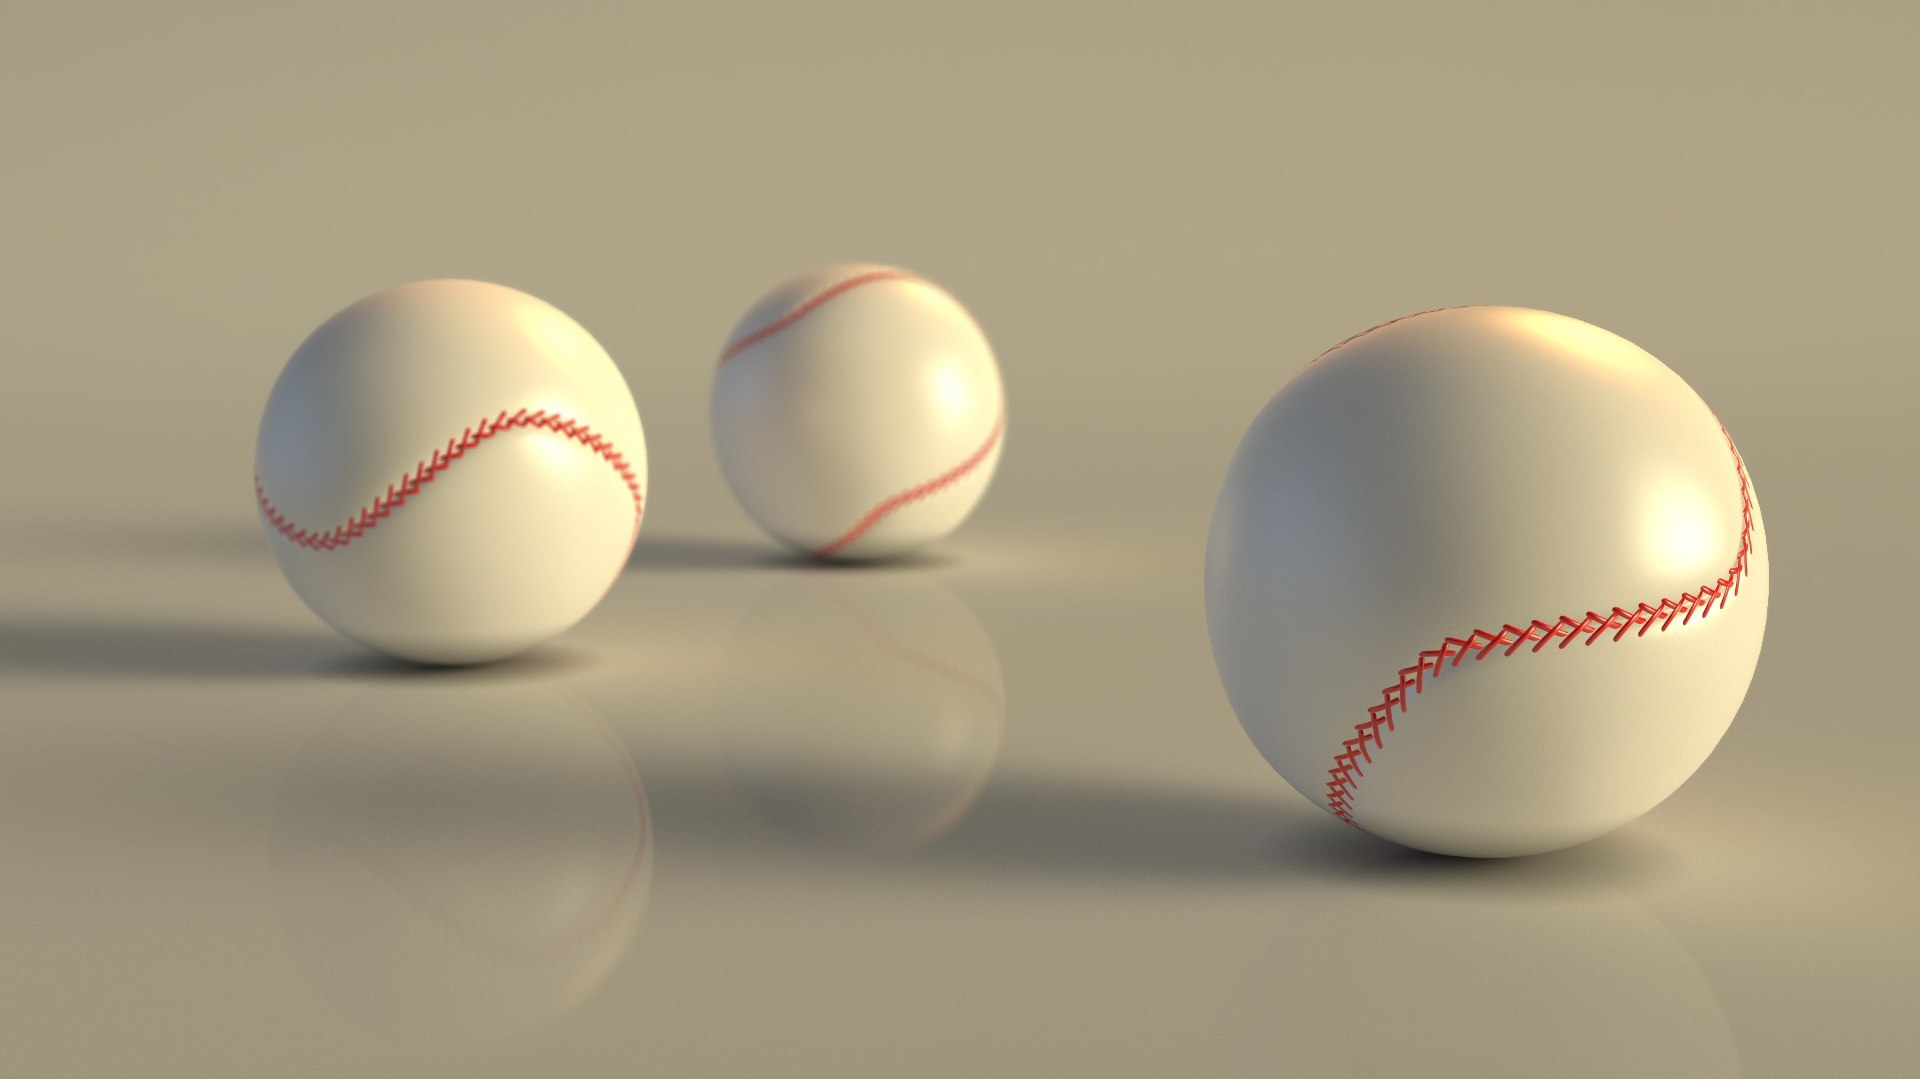 棒球c4d模型插图C4D模型、生活用品C4D模型网